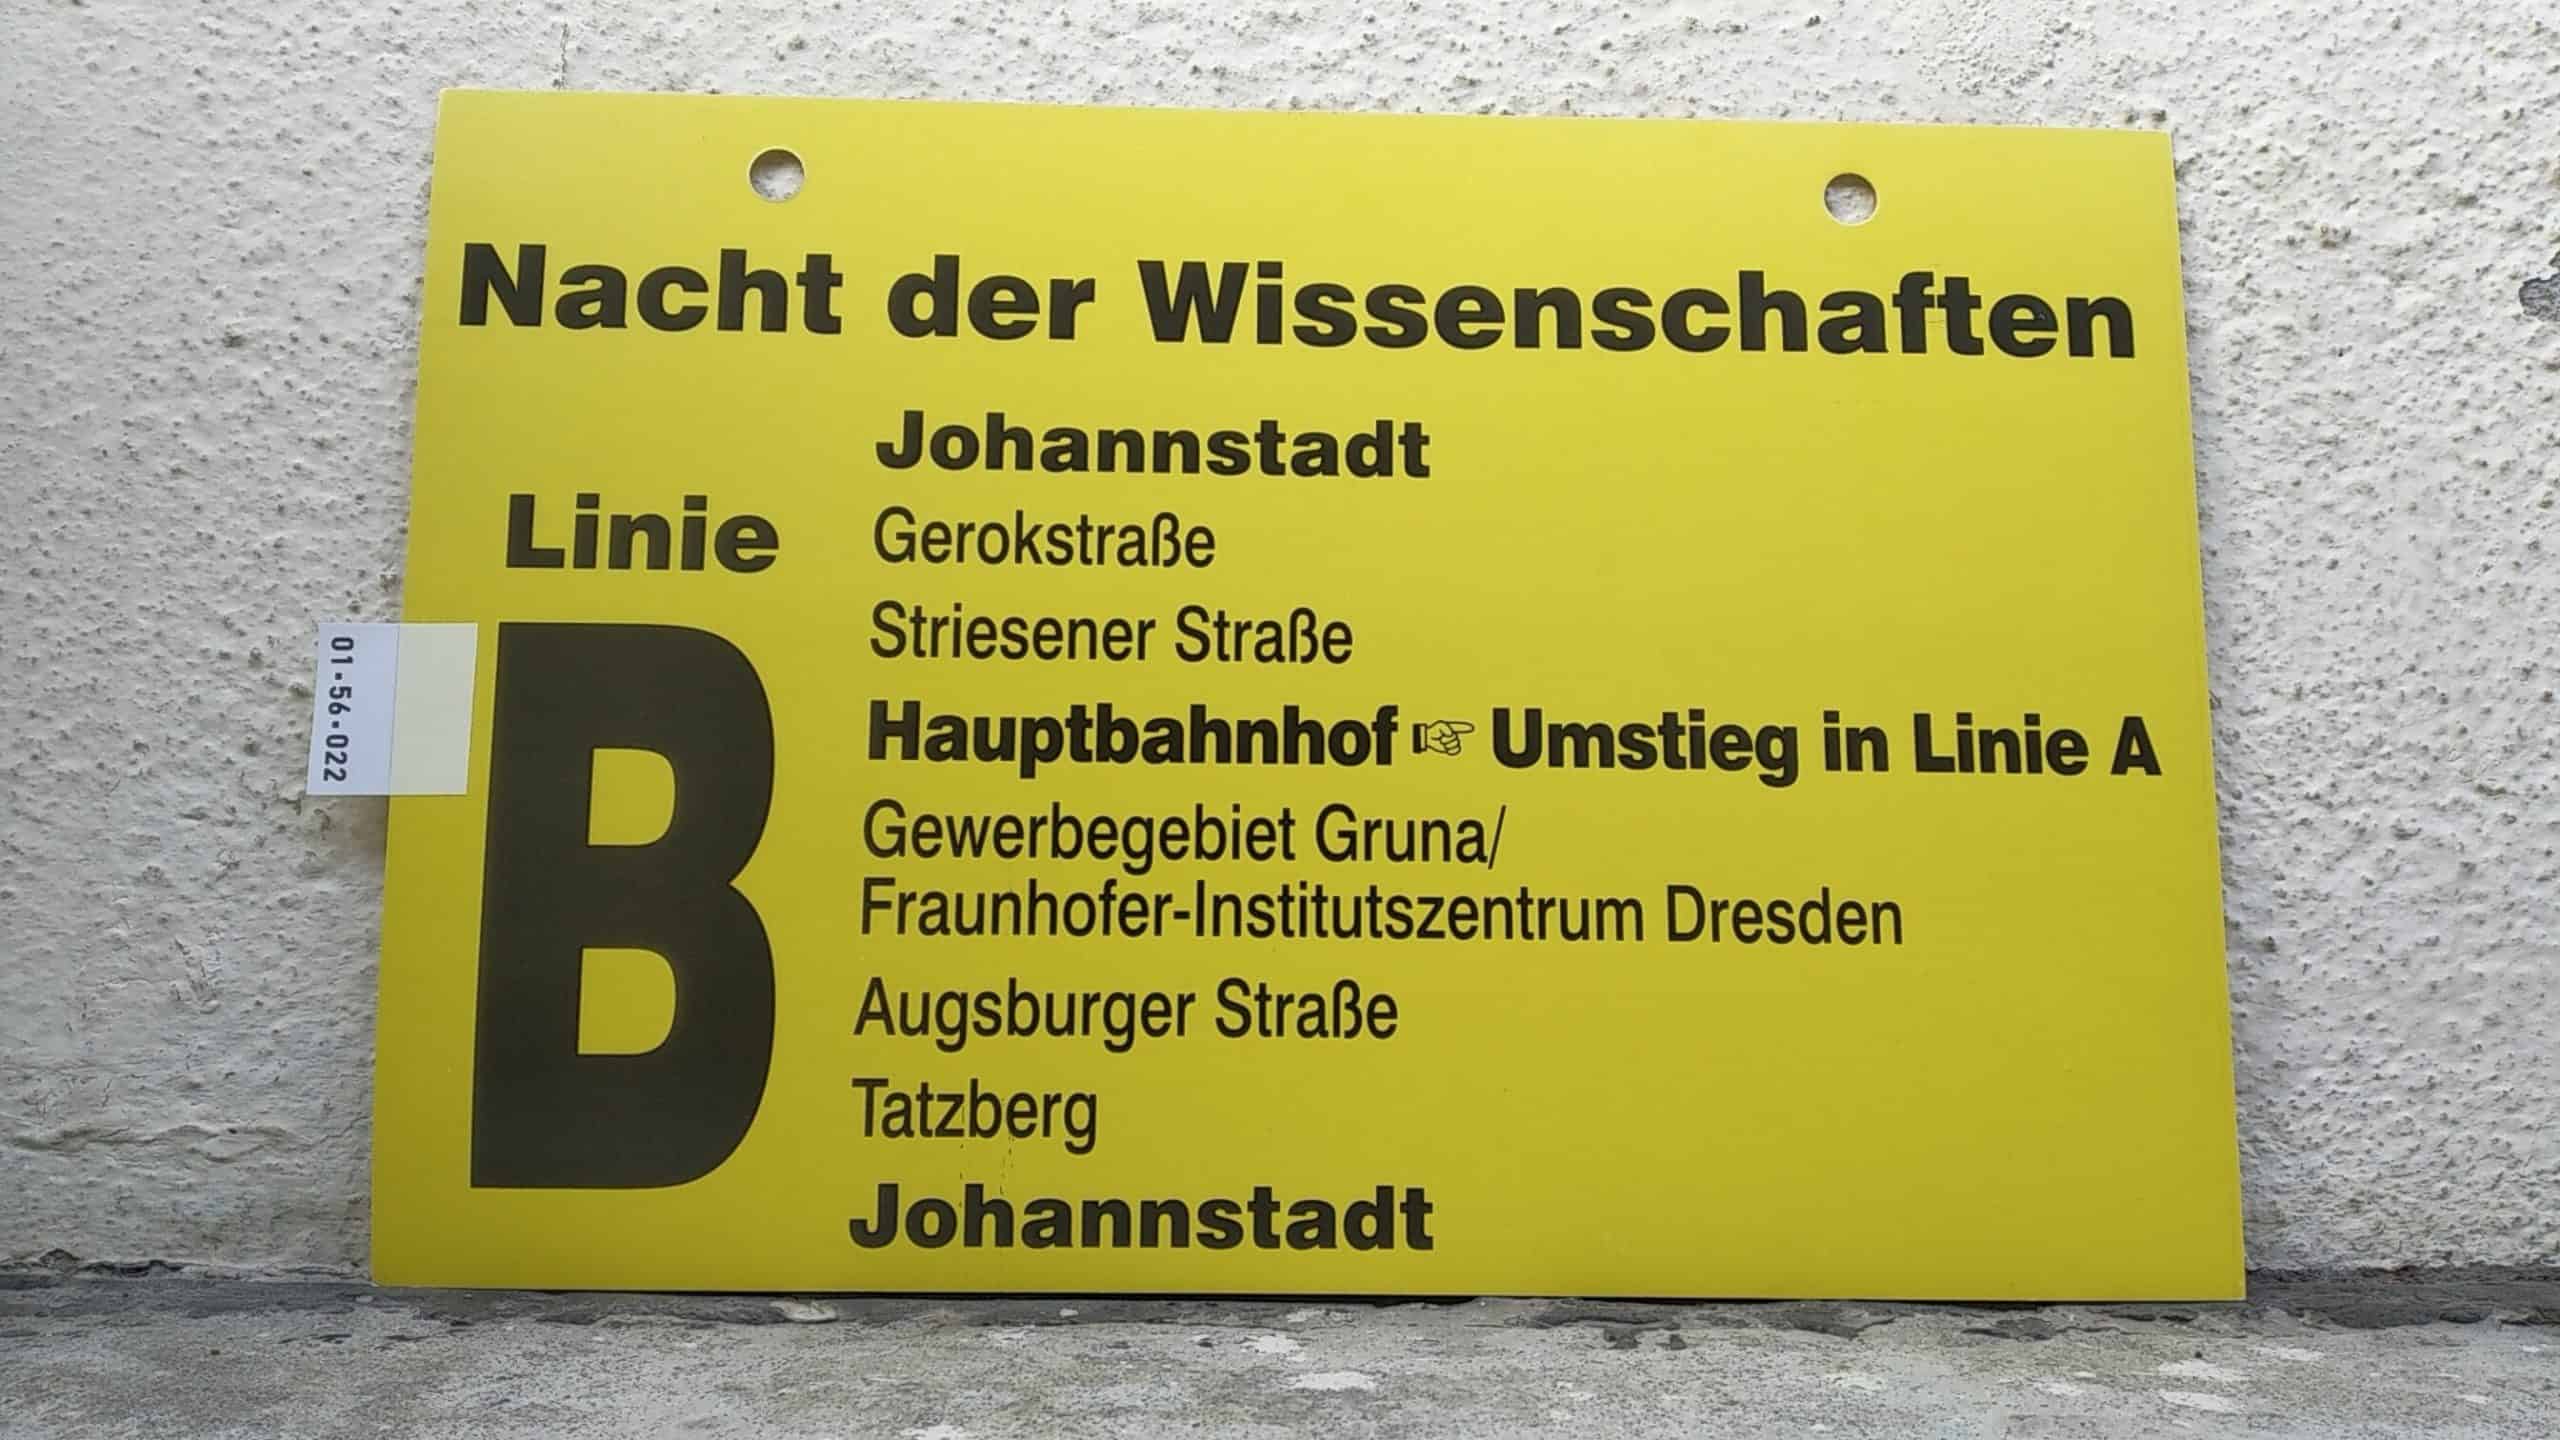 Ein seltenes Bus-Linienschild aus Dresden, anläßlich Nacht der Wissenschaften Linie B  Johannstadt - Johannstadt